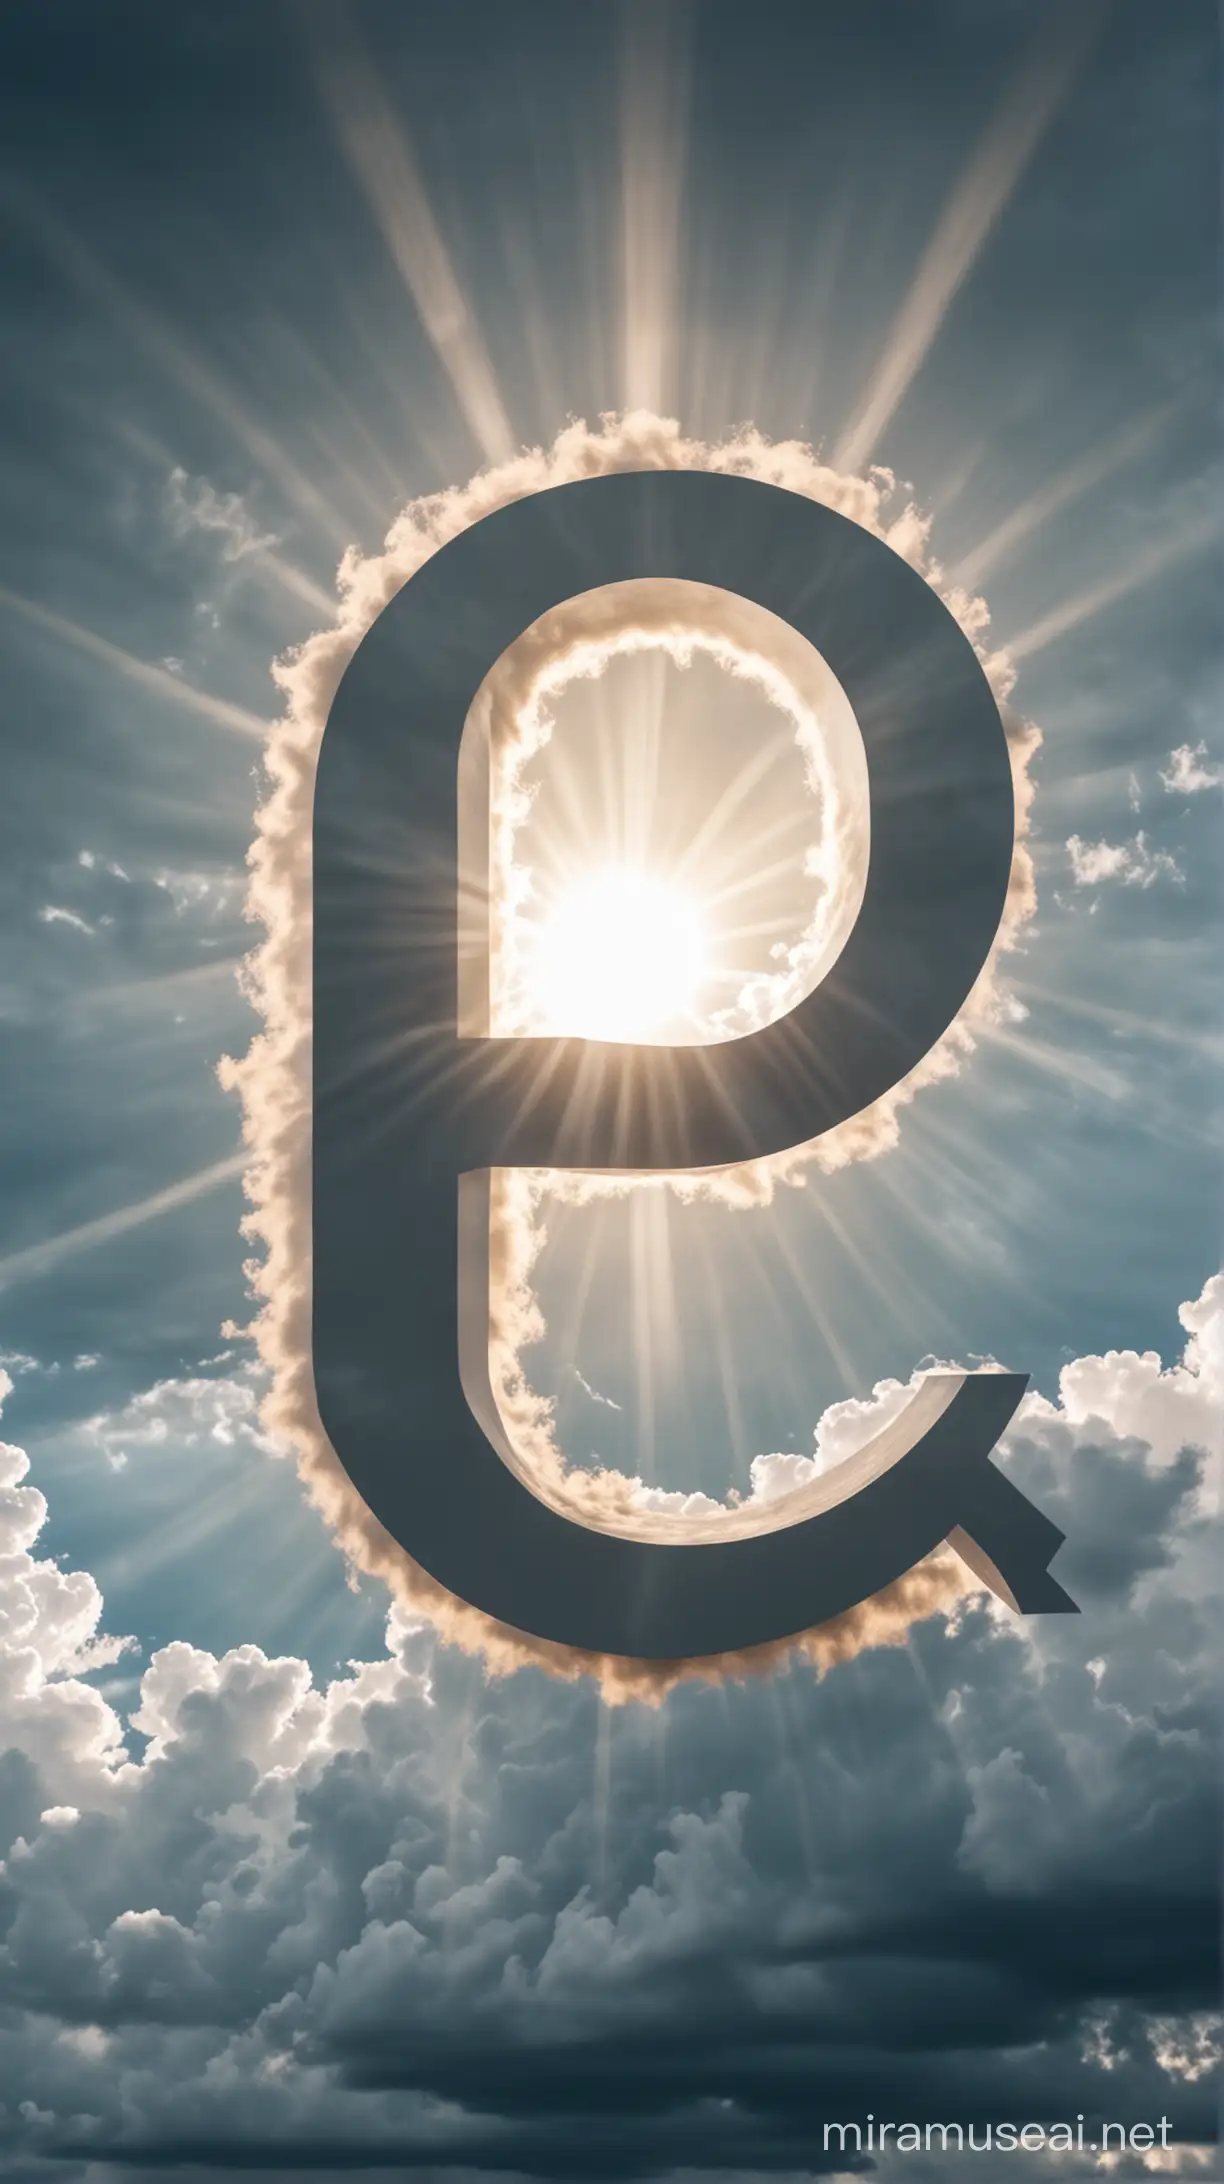 de letter Q heel groot in een wolkenlucht met zonnestralen